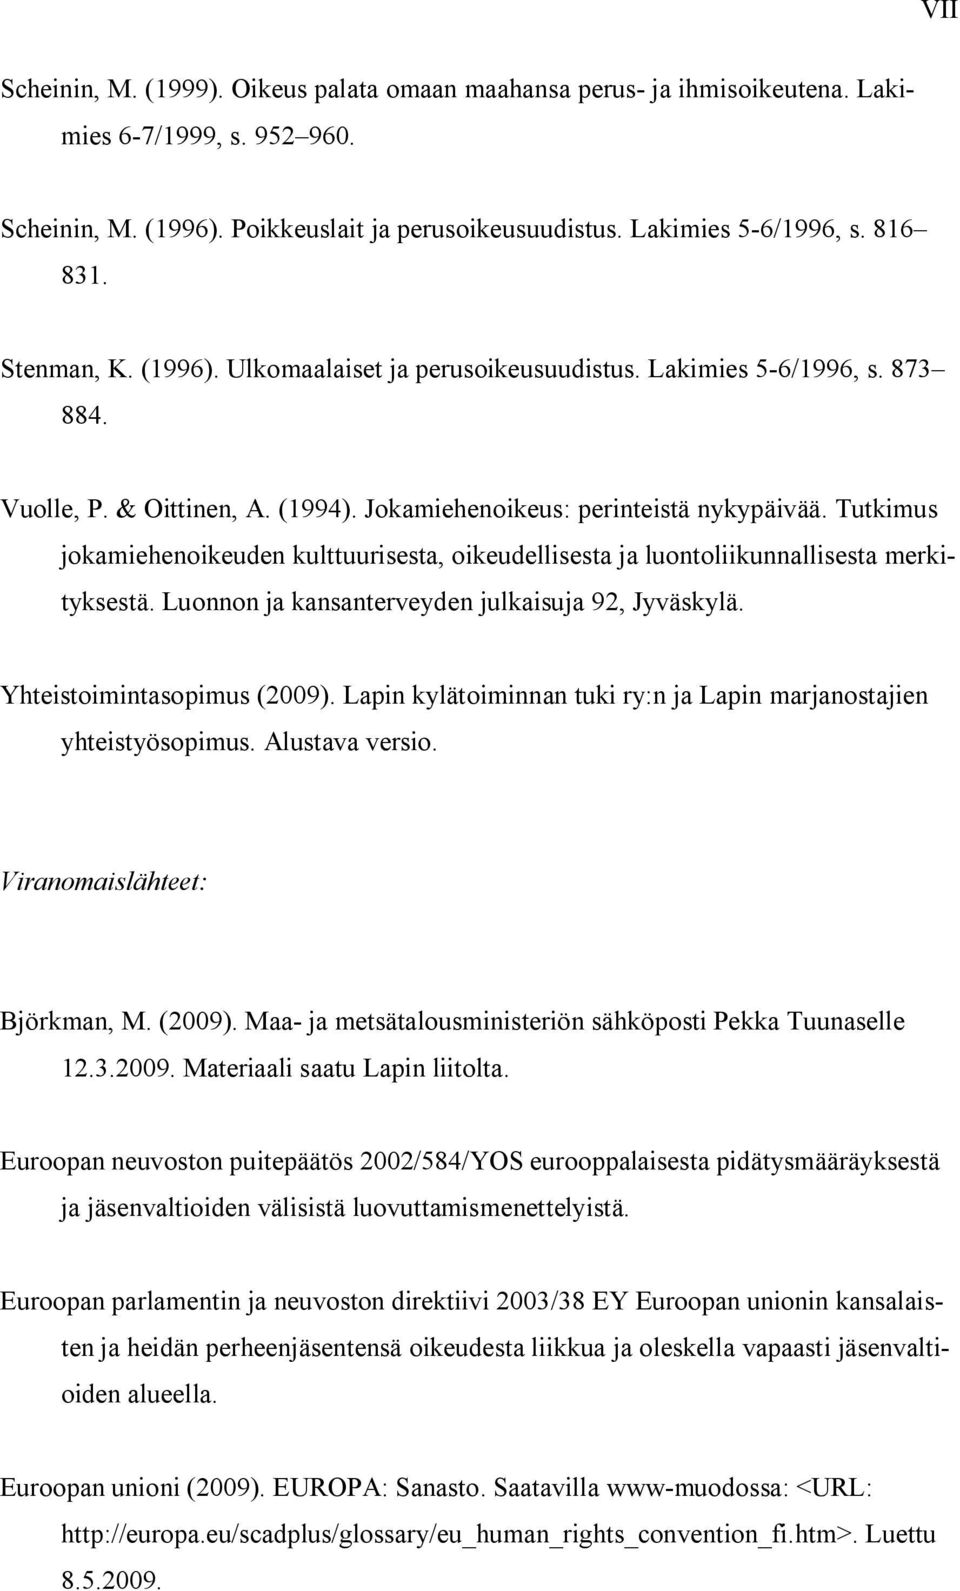 Tutkimus jokamiehenoikeuden kulttuurisesta, oikeudellisesta ja luontoliikunnallisesta merkityksestä. Luonnon ja kansanterveyden julkaisuja 92, Jyväskylä. Yhteistoimintasopimus (2009).